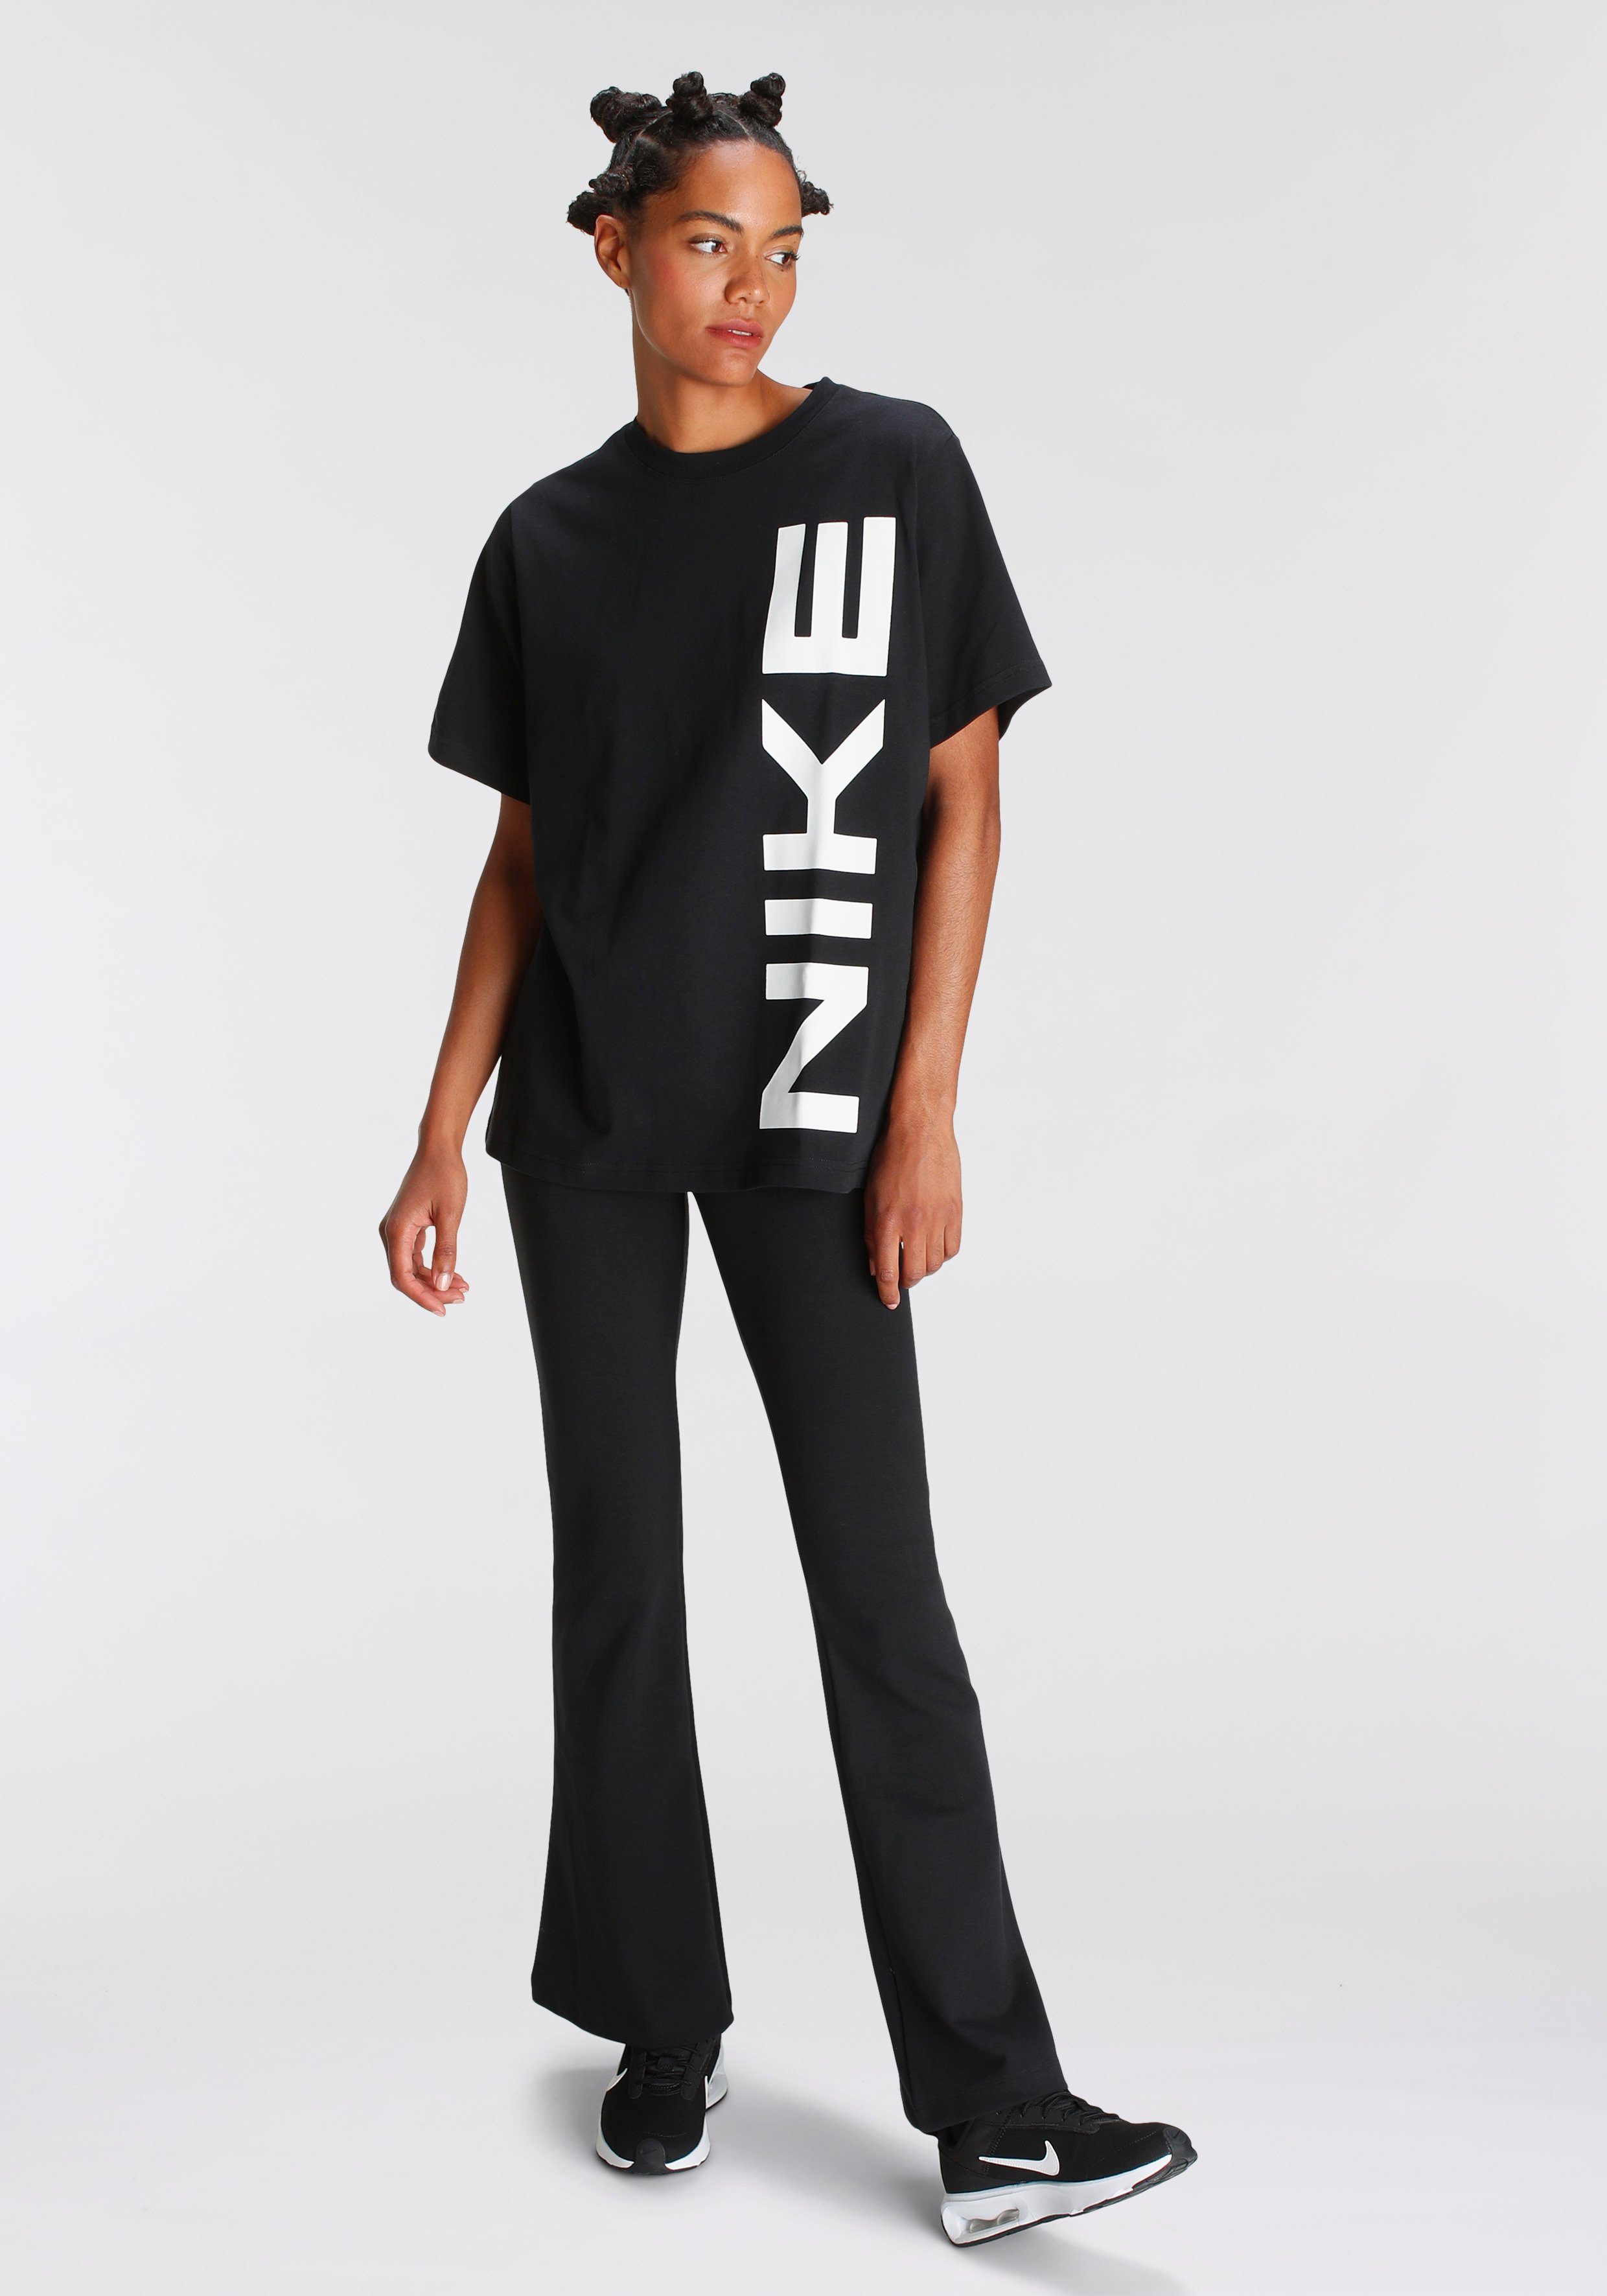 T-SHIRT WOMEN'S AIR T-Shirt Sportswear Nike